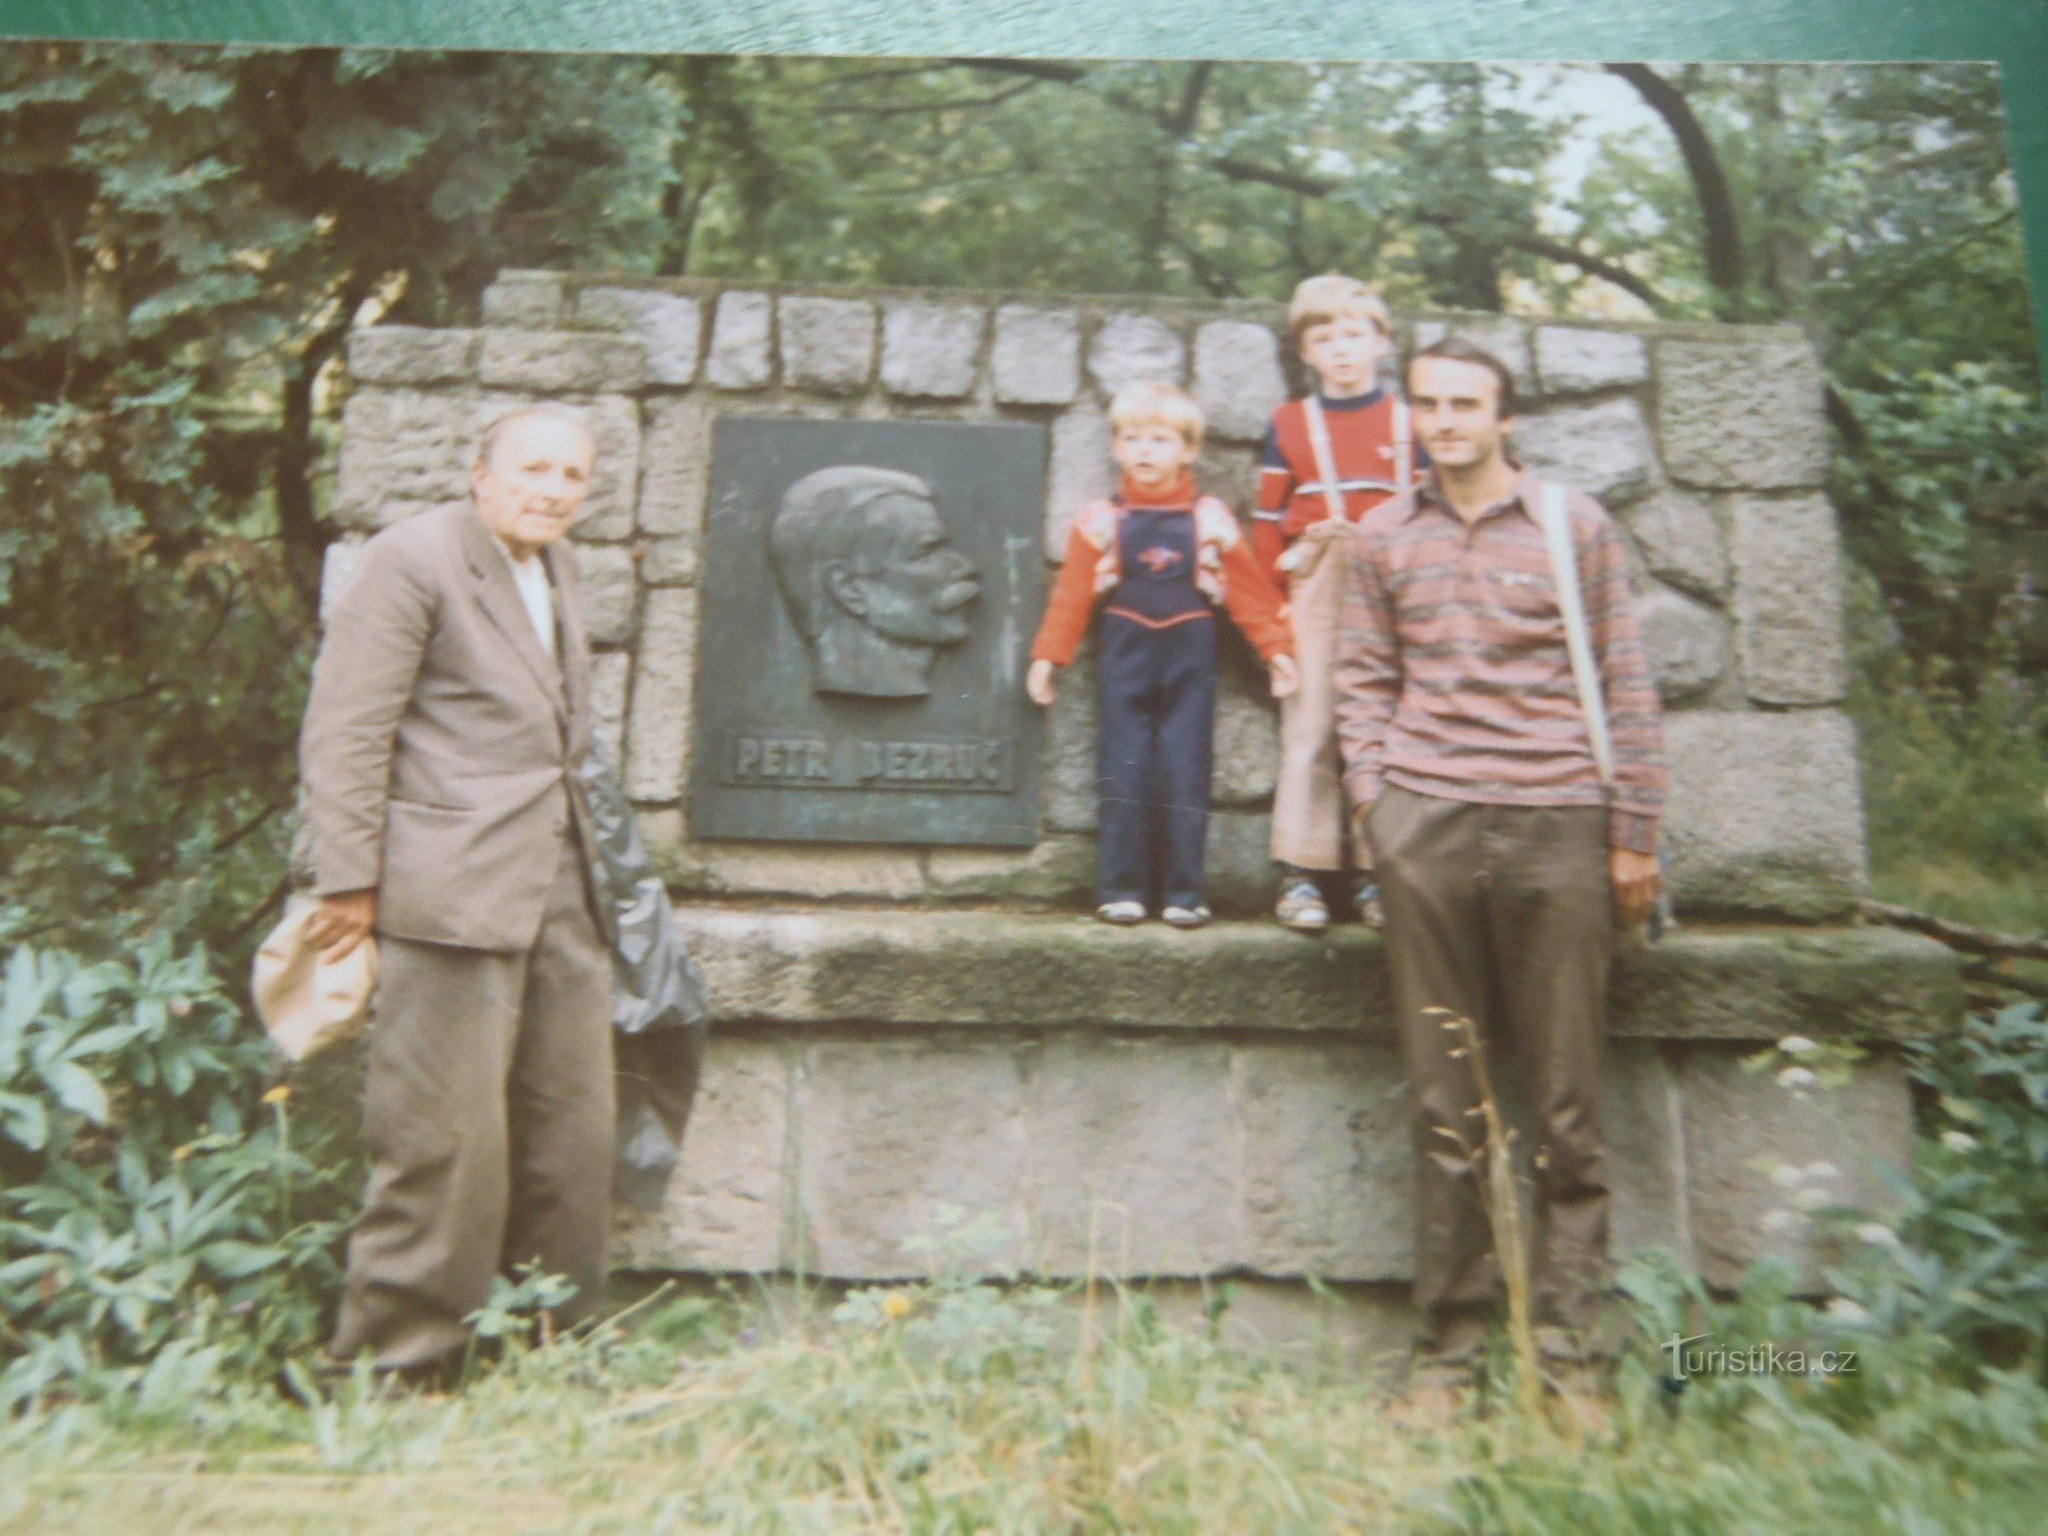 Samma plats, år 1987. Min pappa Otakar Vašek, brorson Petr Bezruč och barnbarn Anto